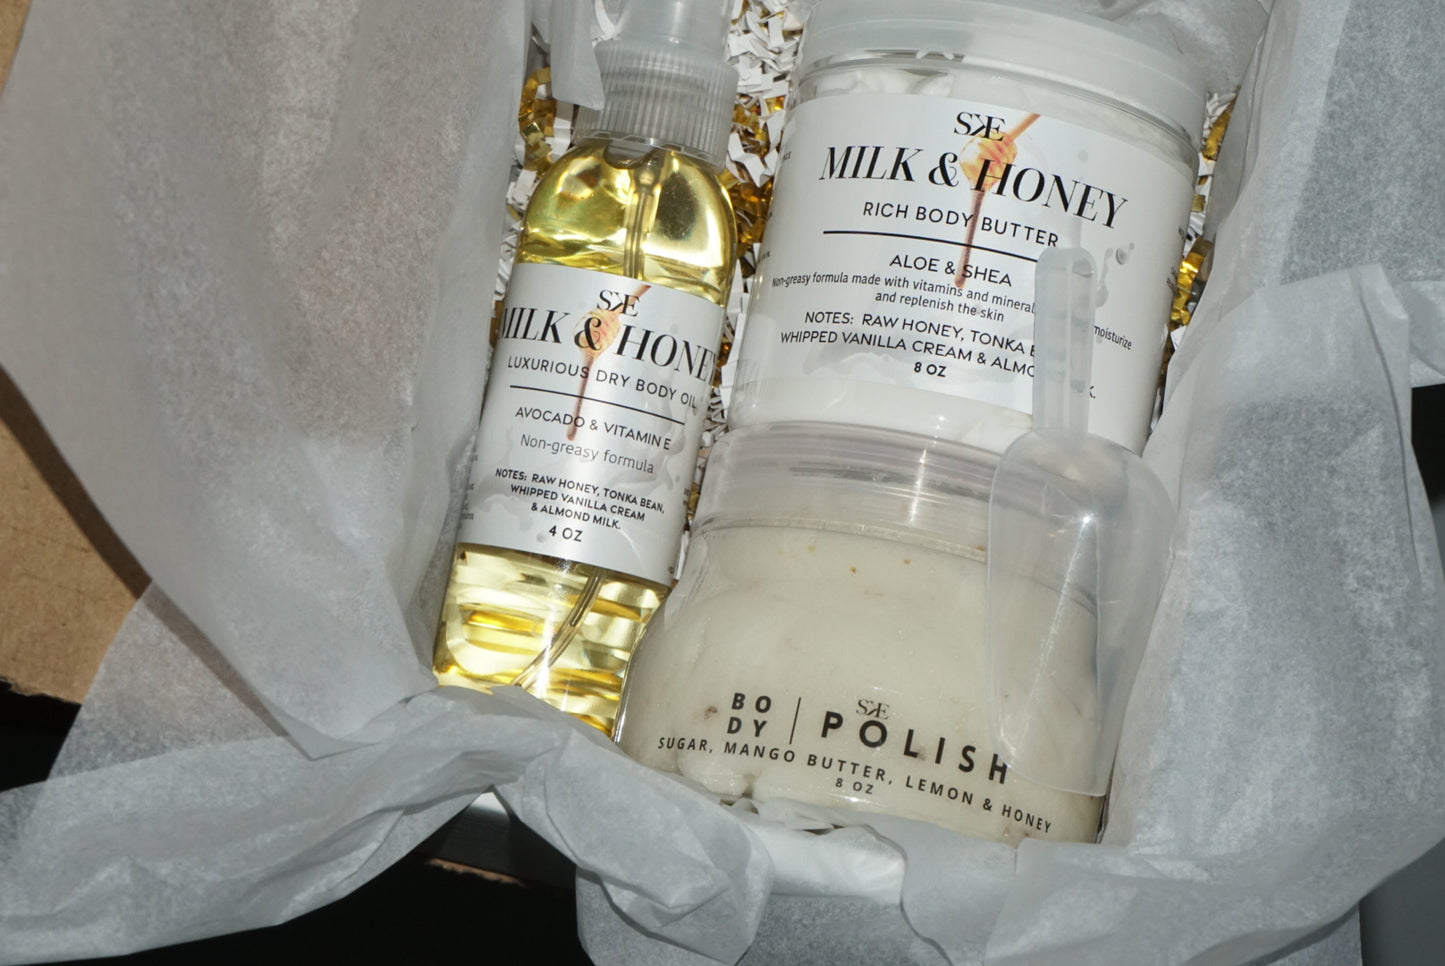 THE BODY BOX SET Milk & Honey Skin Elix SKE www.skinelixx.com